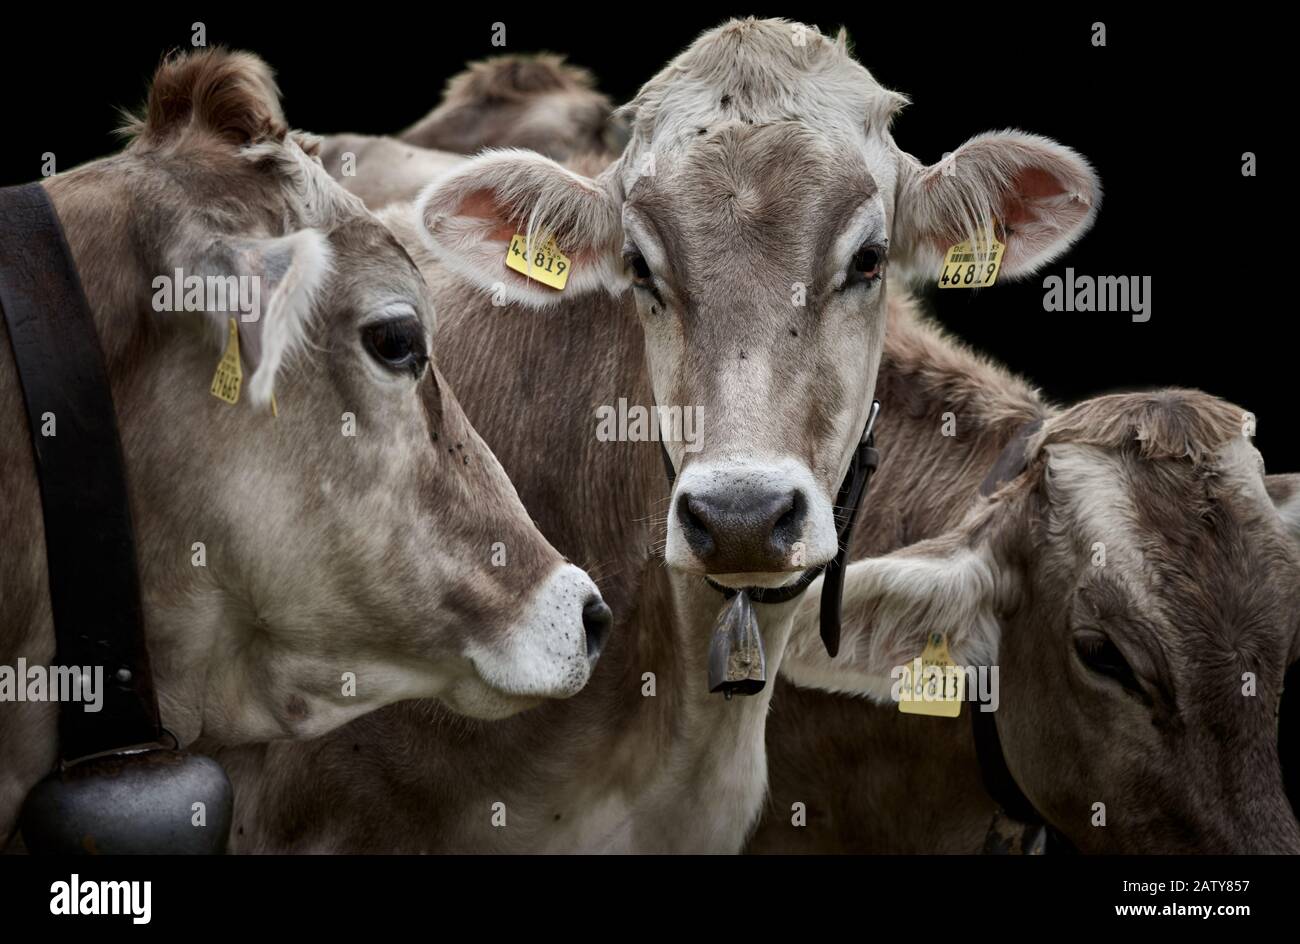 Drei braune Milchkühe mit Kuhglocken und gelben Etiketten, nah beieinander und isoliert auf schwarzem Grund Stockfoto